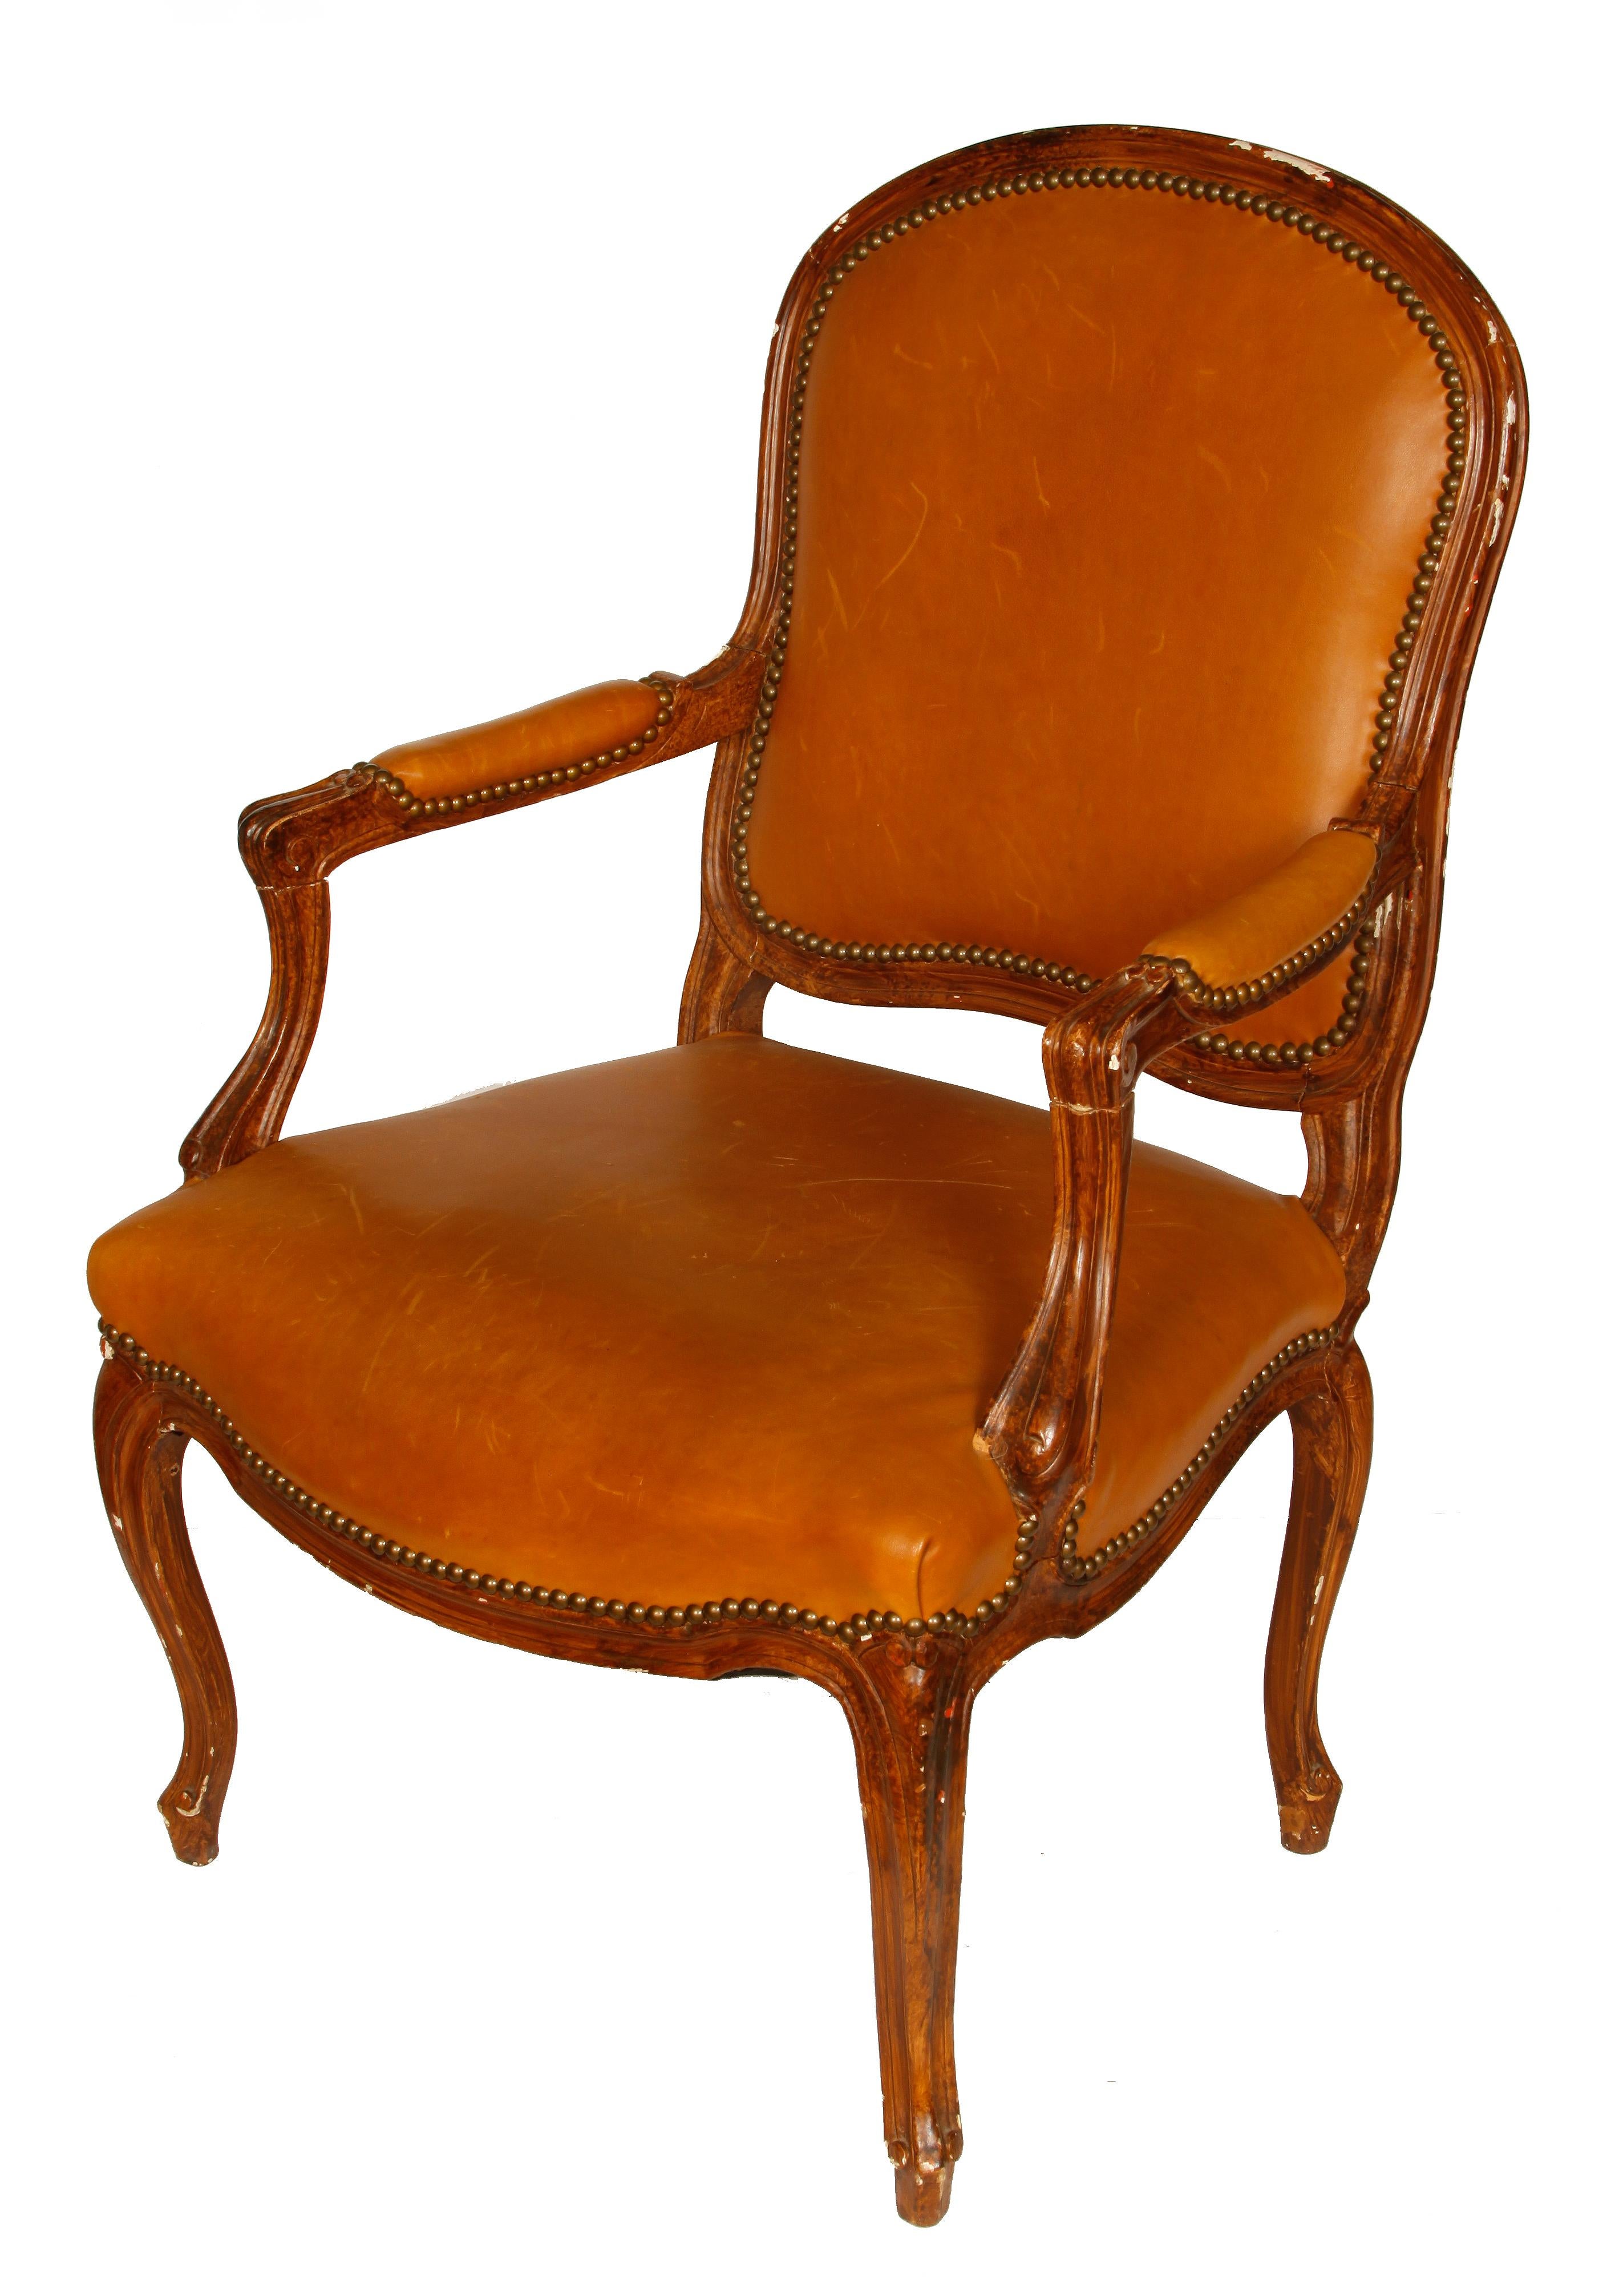 Paire de fauteuils bergères en cuir de style Louis XV, avec garniture en tête de clou sur le cuir, pieds cabriole sculptés et dossiers en tissu à carreaux bleu ardoise et ivoire.  Quelques rayures sur le cuir